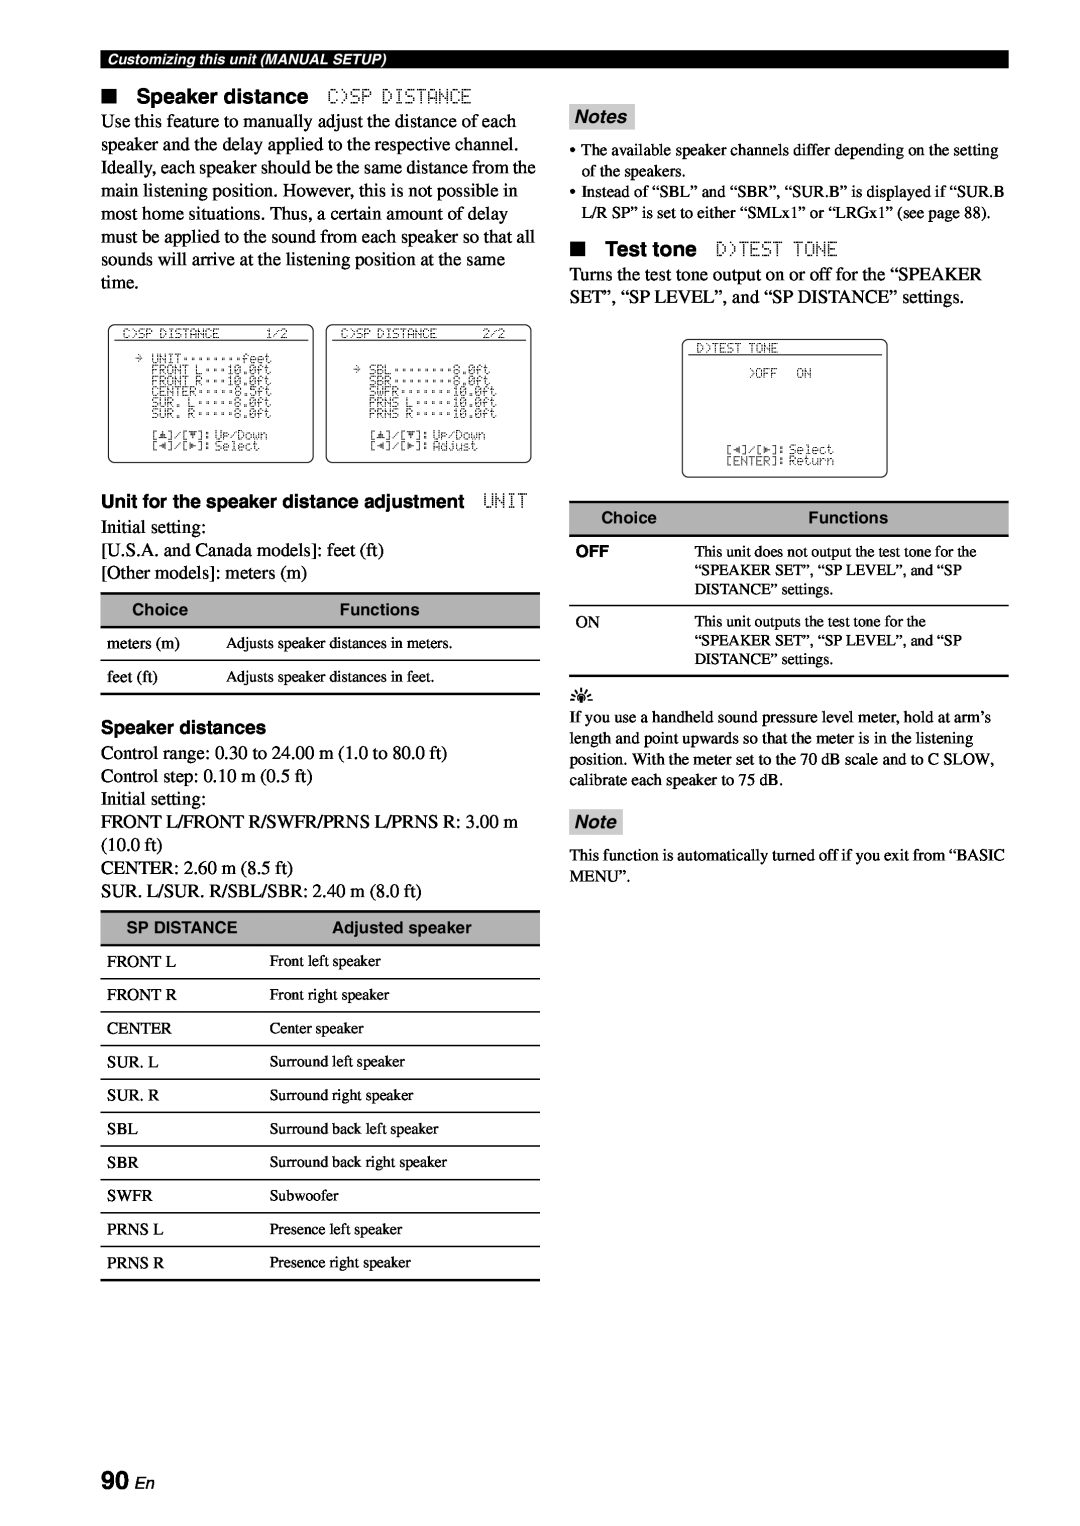 Yamaha RX-V863 owner manual 90 En, Speaker distance CSP DISTANCE, Notes 